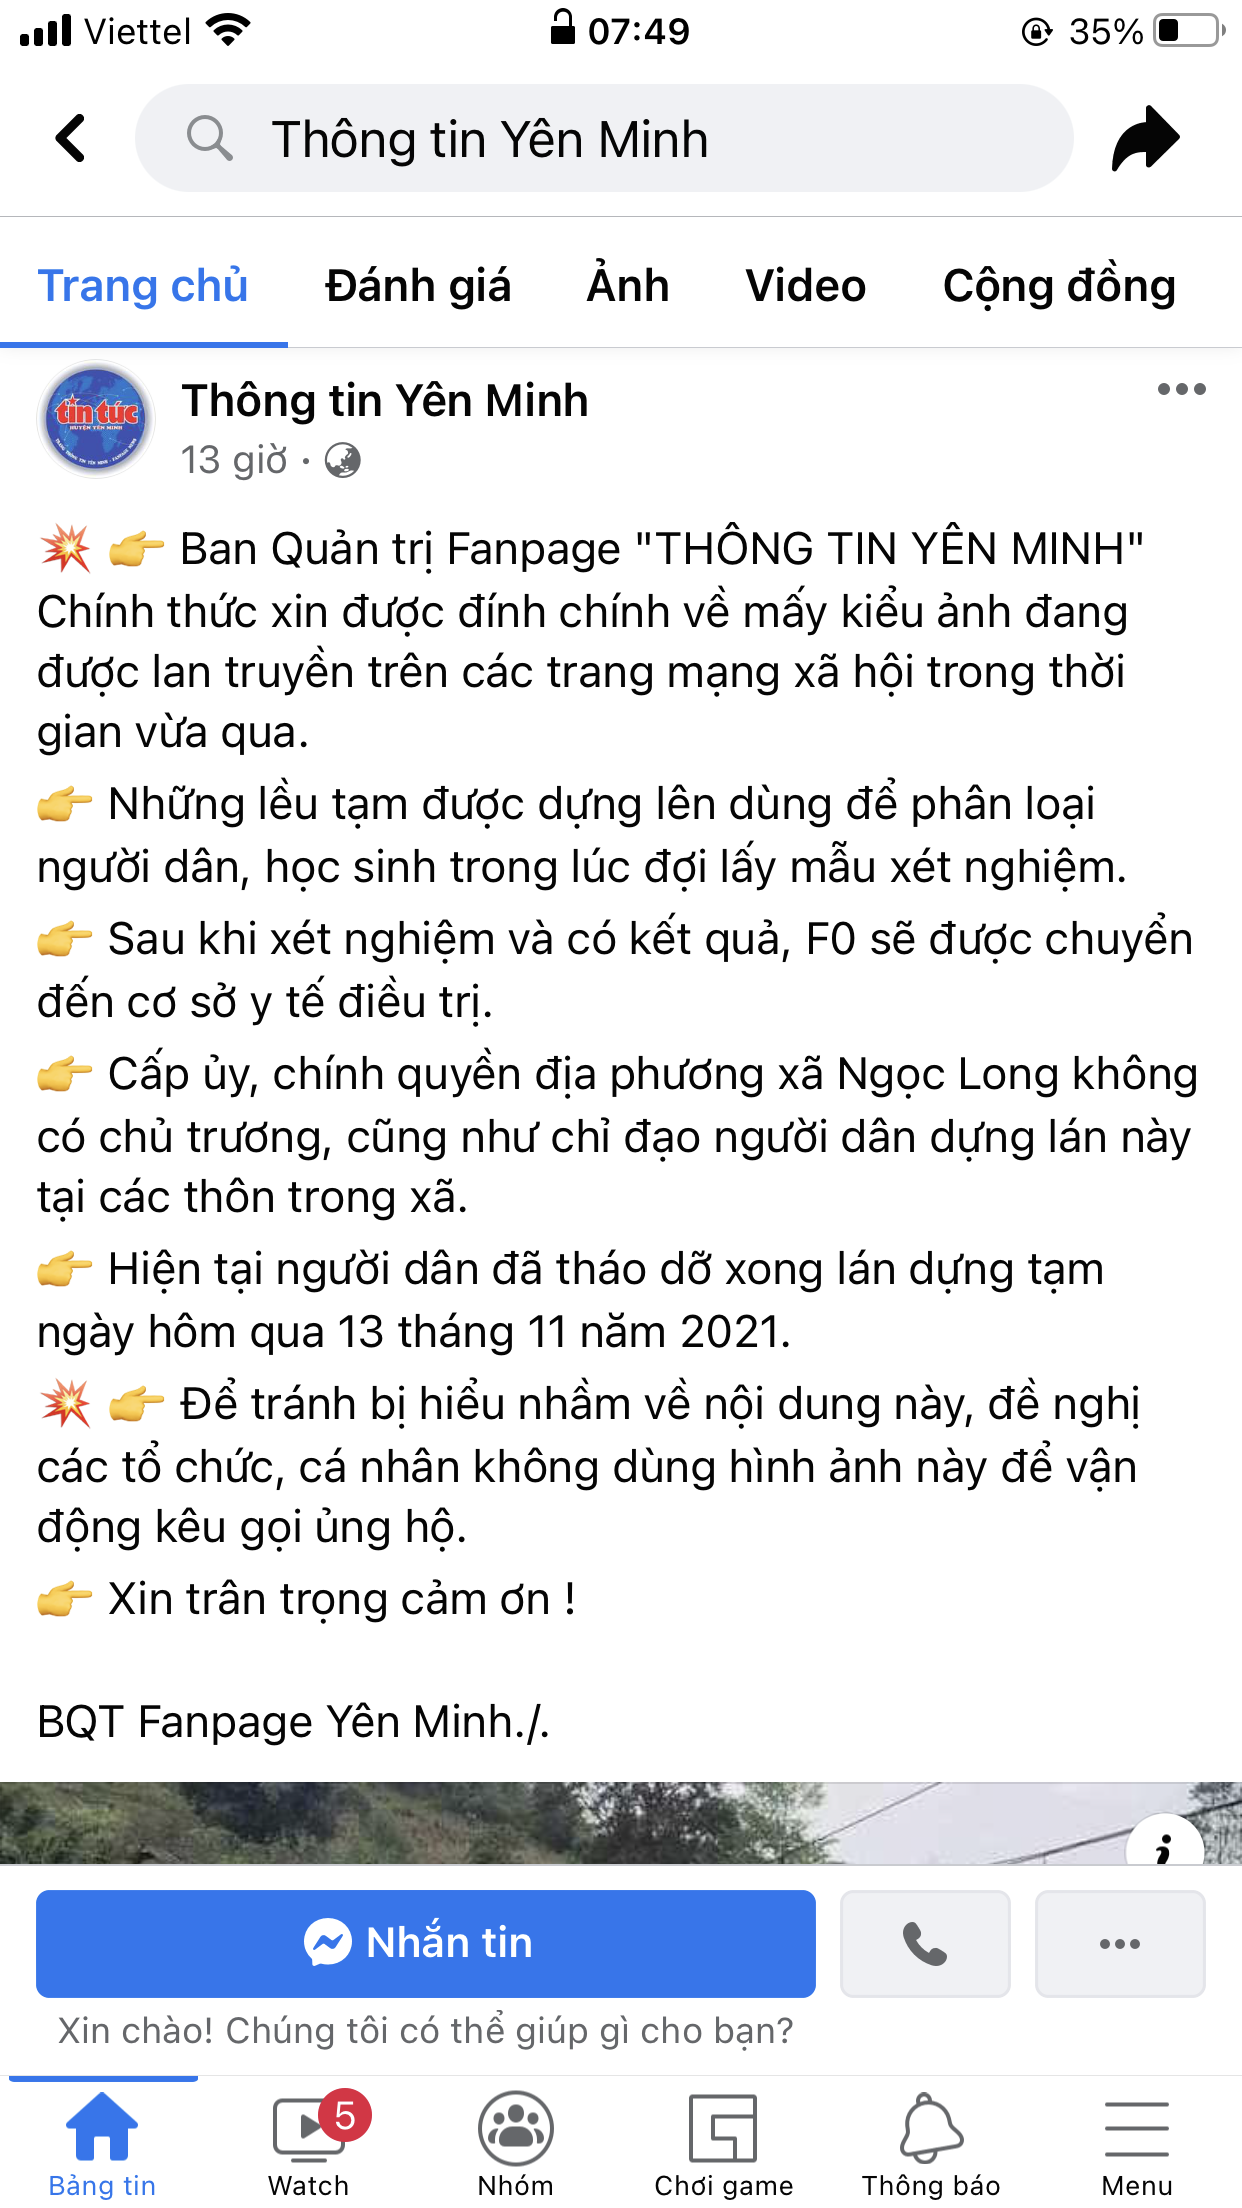 Trang Fanpage của huyện Yên Minh cũng đính chính thông tin trên